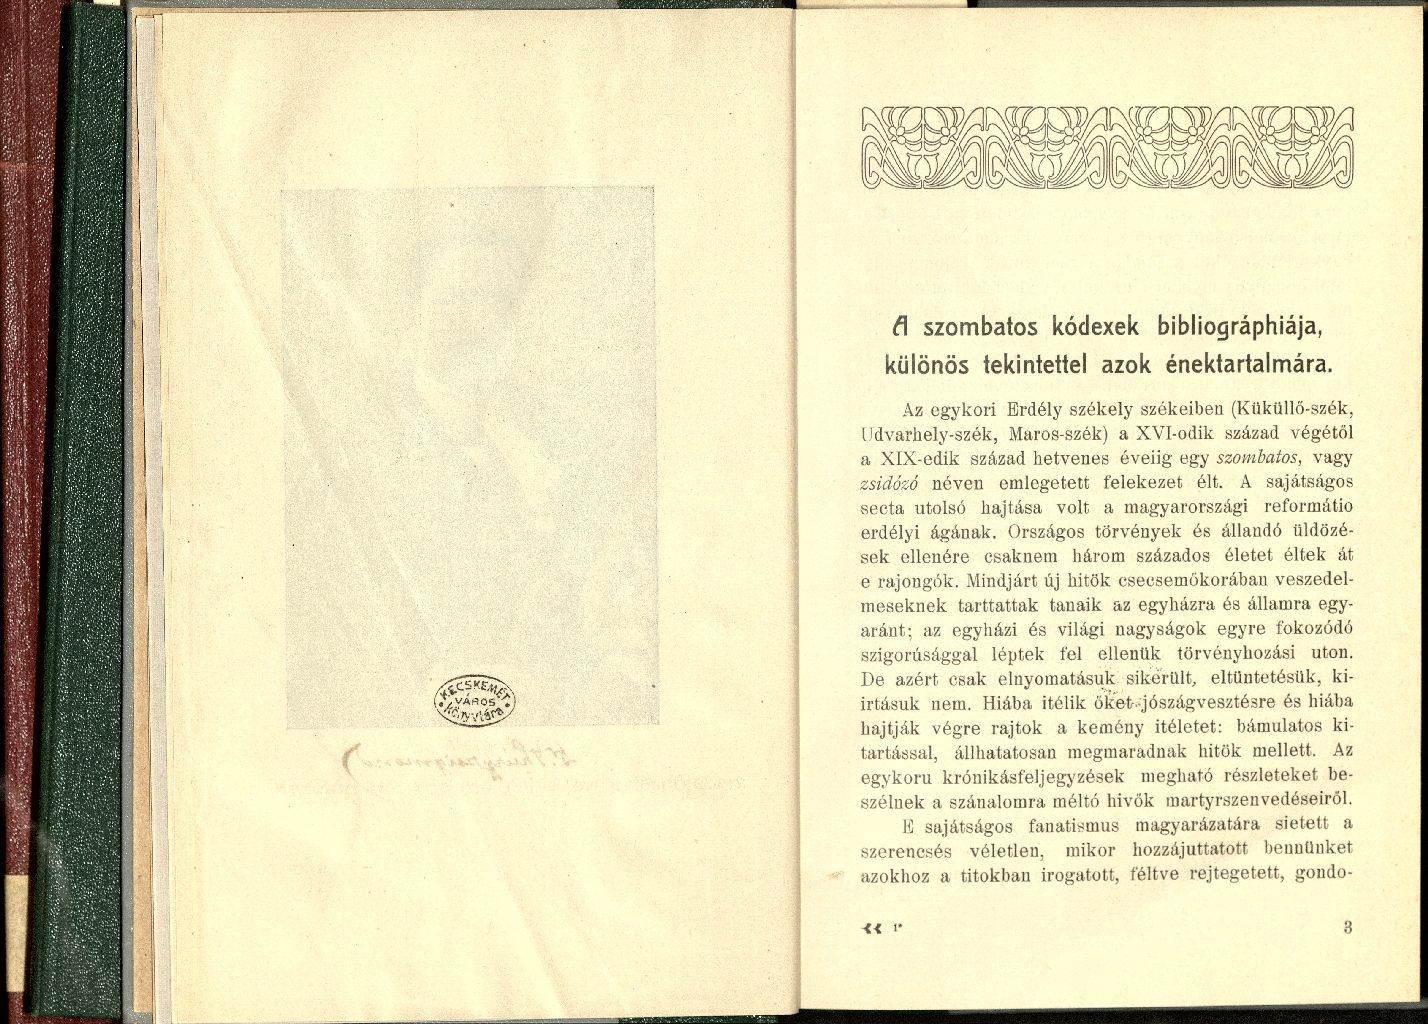 Thúry Zsigmond: A szombatos kódexek bibliográphiája, 1912